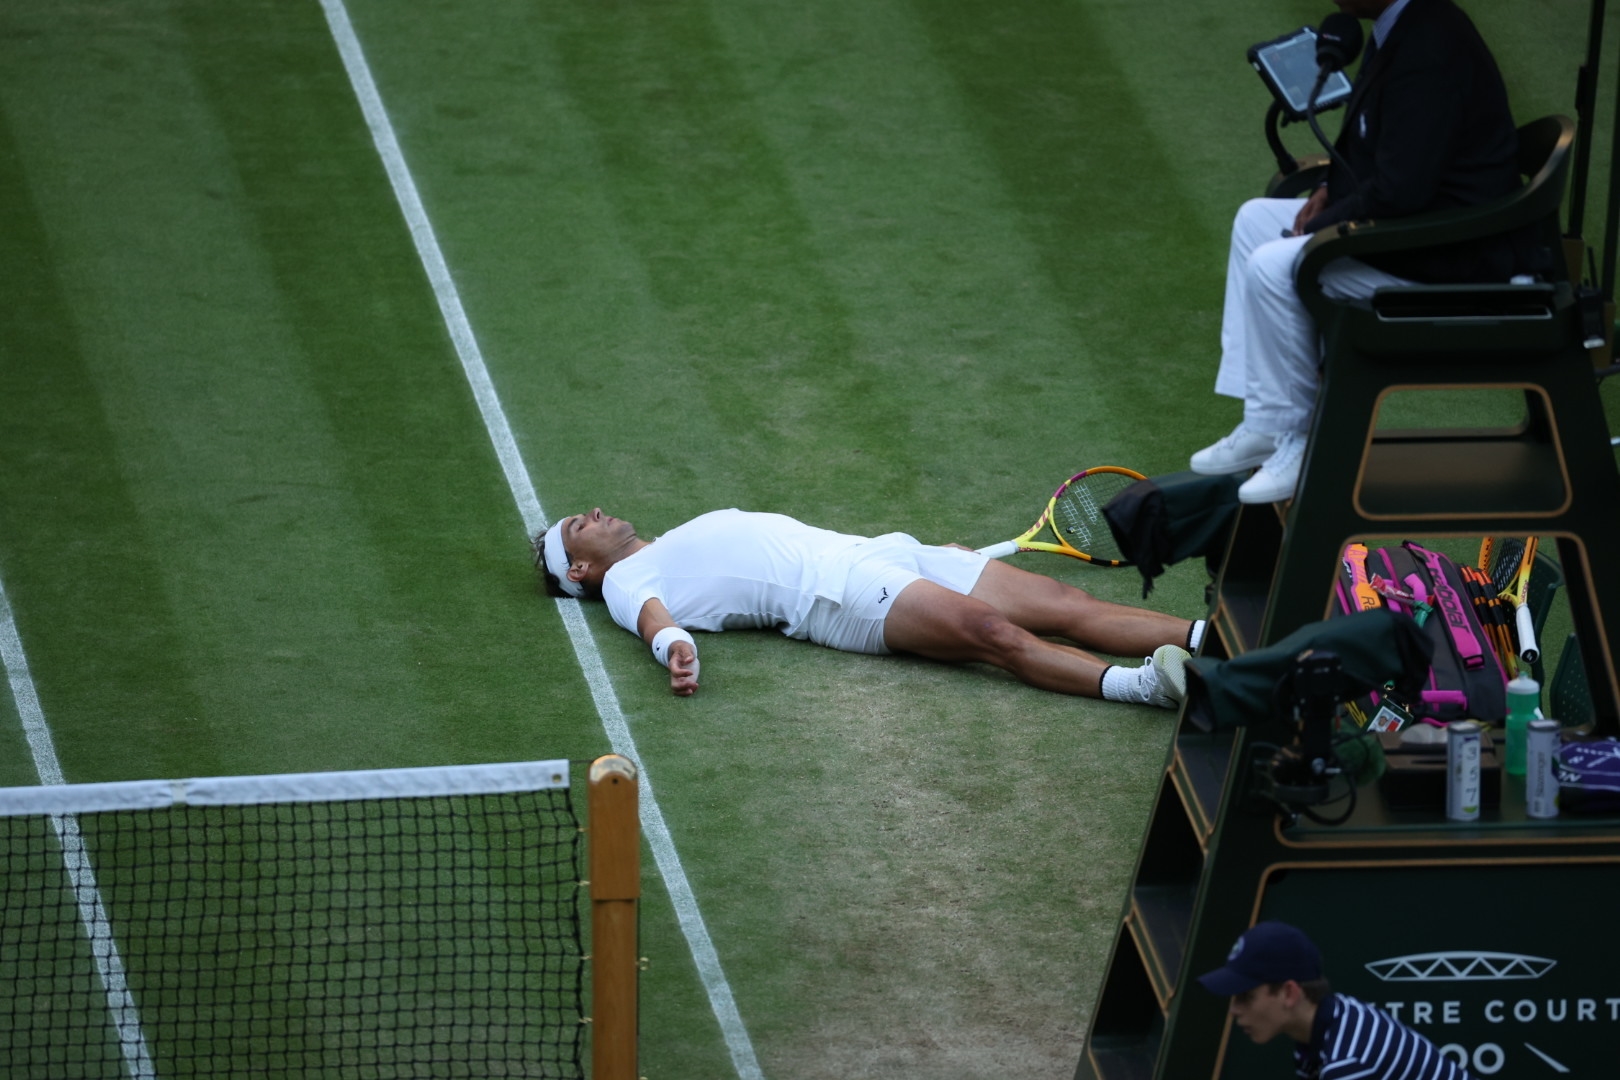 Ναδάλ Wimbledon: Ο τραυματισμός που αναστάτωσε την οικογένειά του